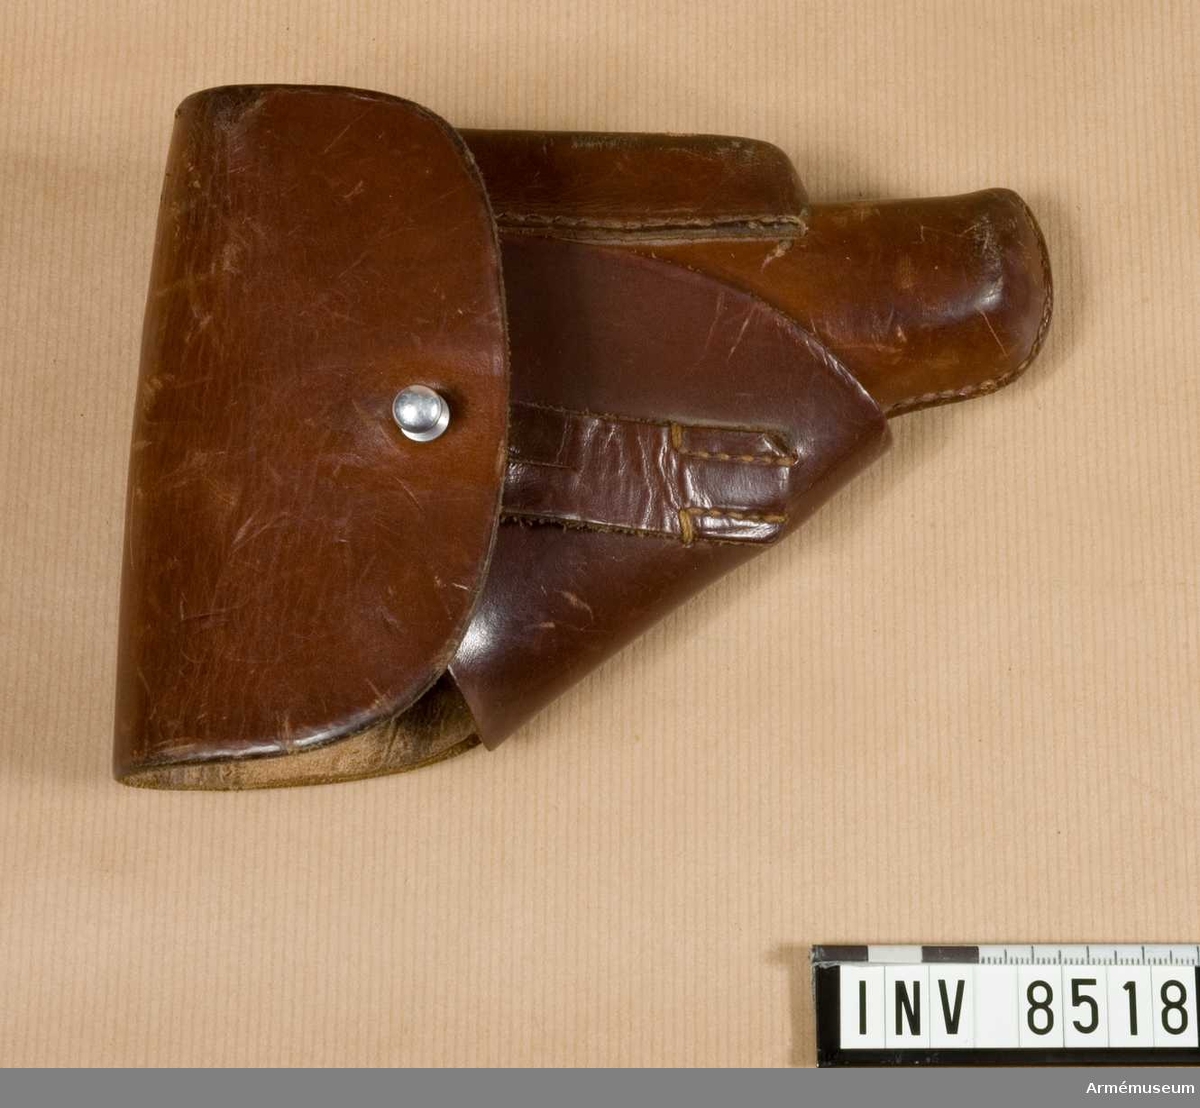 Pistolfodral av läder till halvautomatisk pistol modell HSc, Mauser, Tyskland. Låsknapp av aluminium. Märkt Walther P.P.K. D.R.G.M. (AkAN).

Samhörande nr är 8517-8, pistol, fodral.